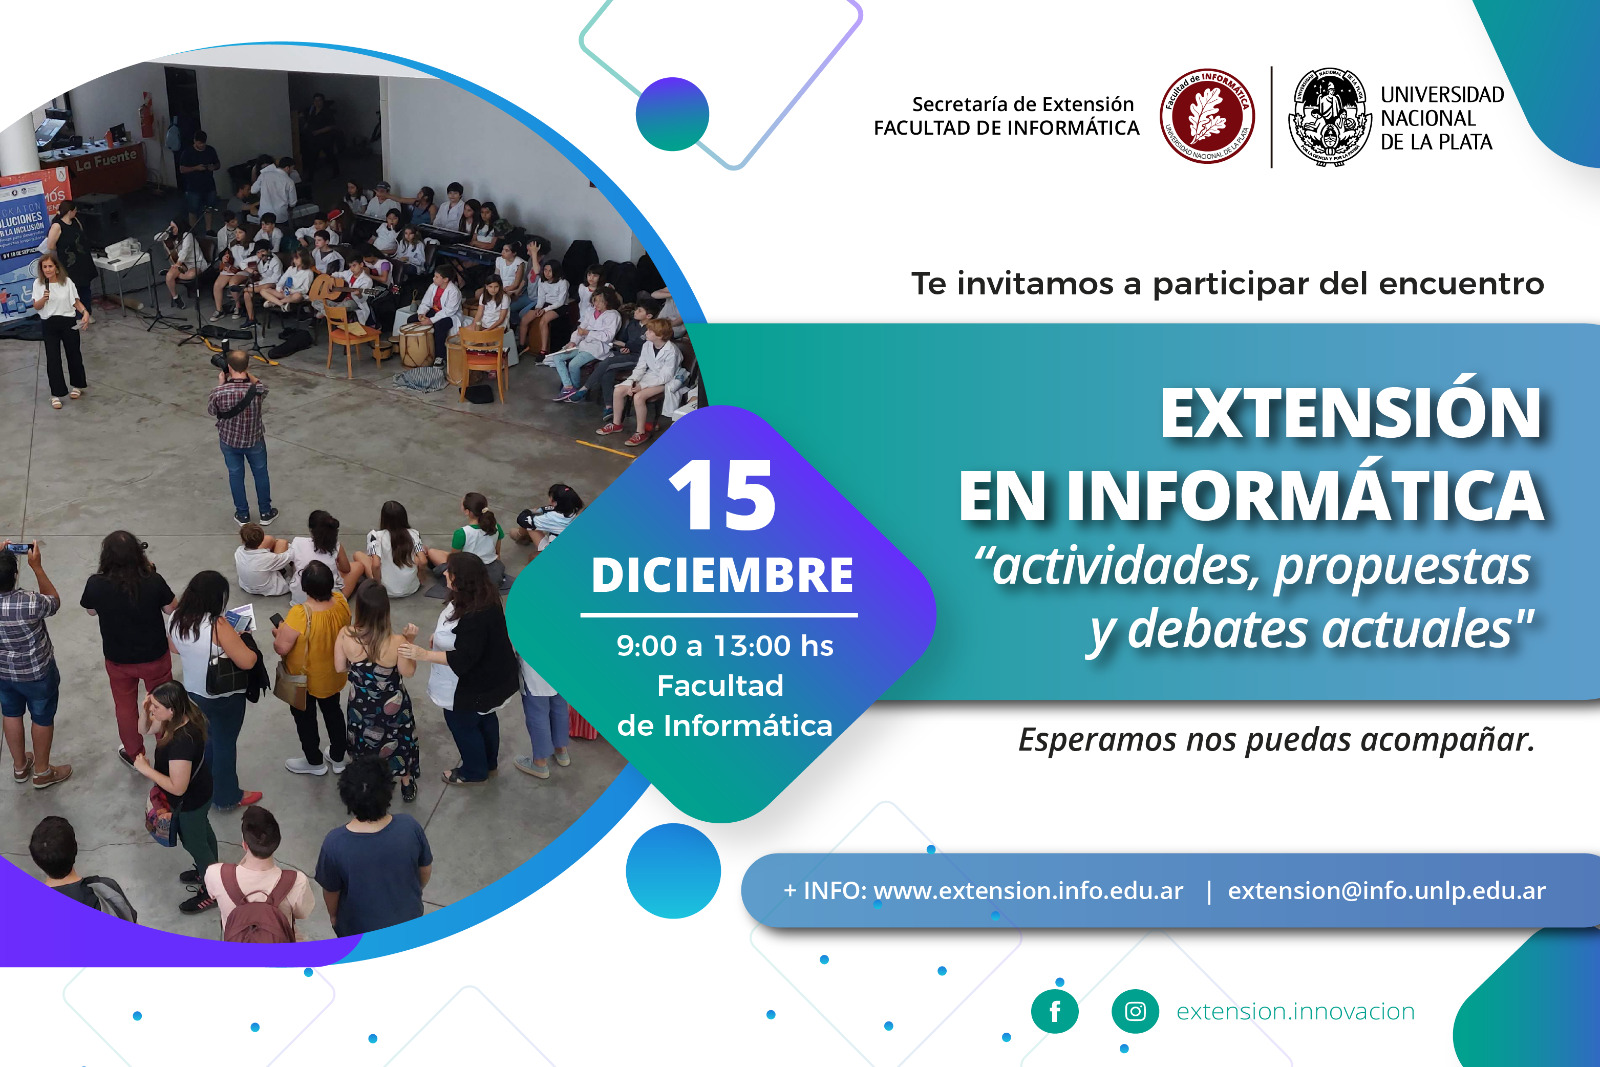 Jornada de Extensión en Informática. 15 de diciembre 9:00 a 13:00 hs. Facultad de Informática. UNLP.